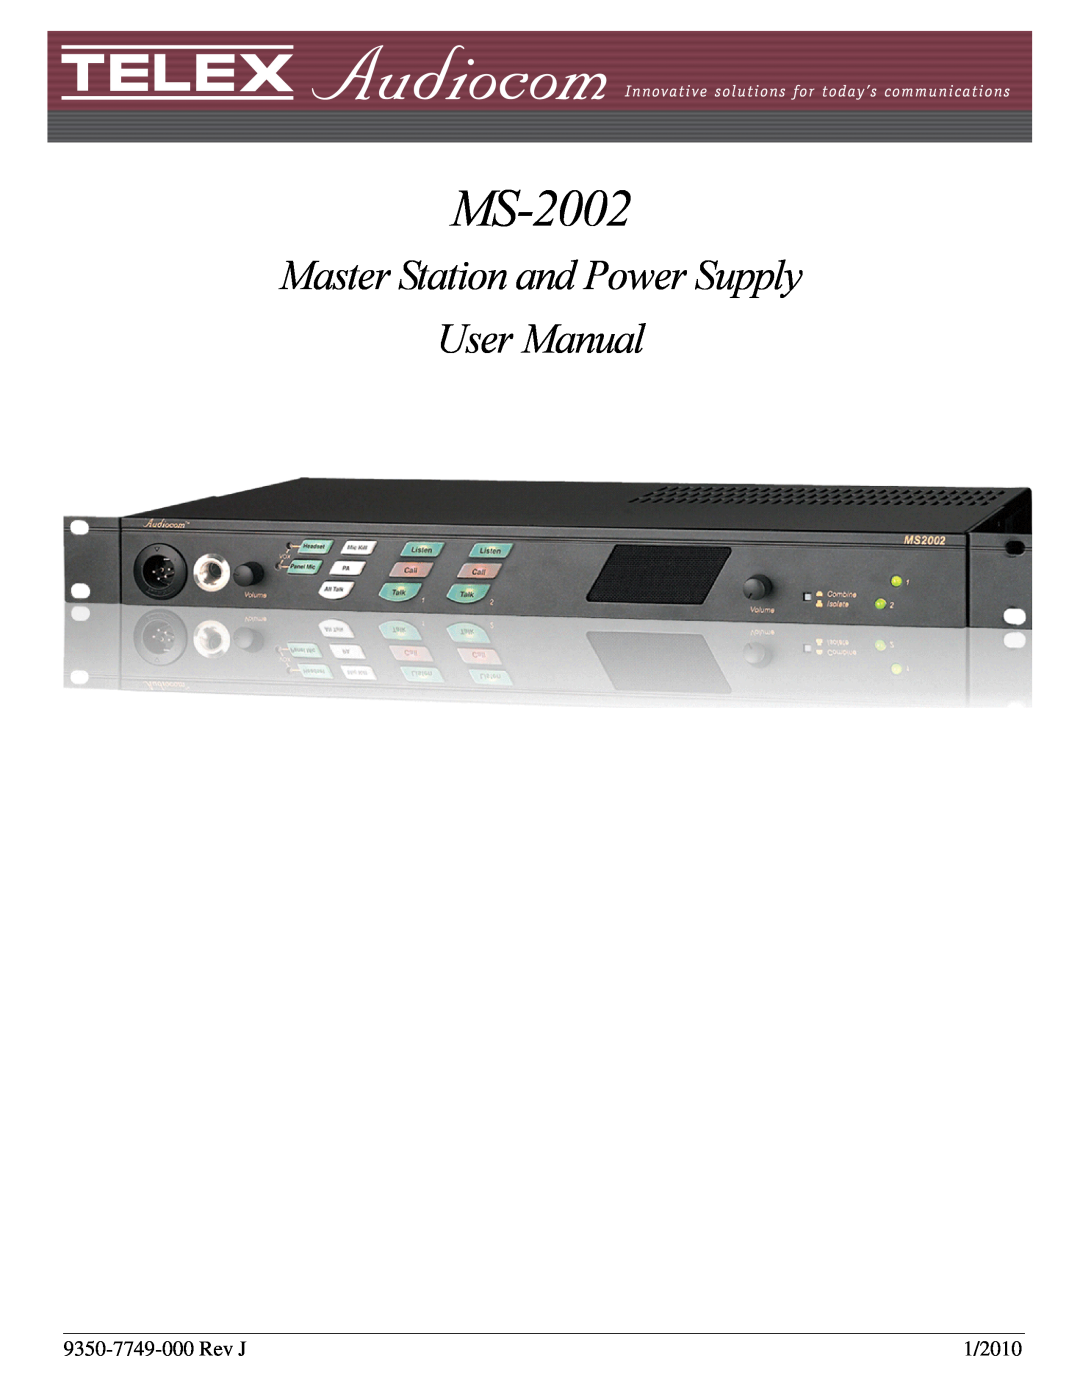 Telex MS-2002 user manual Rev J, 1/2010 